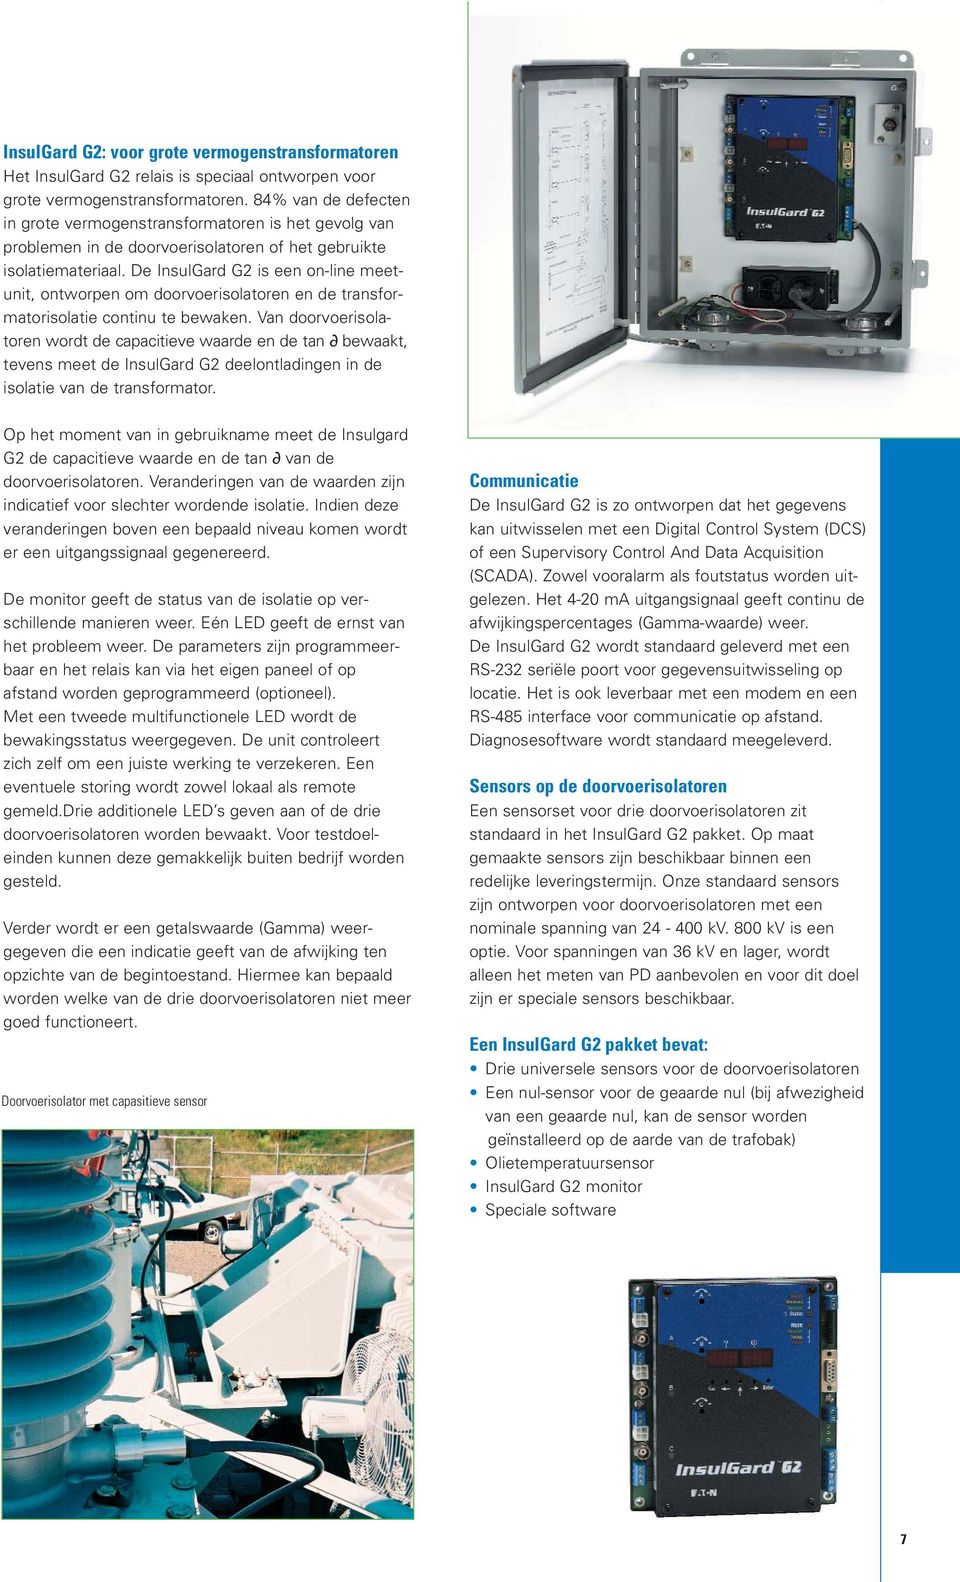 De InsulGard G2 is een on-line meetunit, ontworpen om doorvoerisolatoren en de transformatorisolatie continu te bewaken.